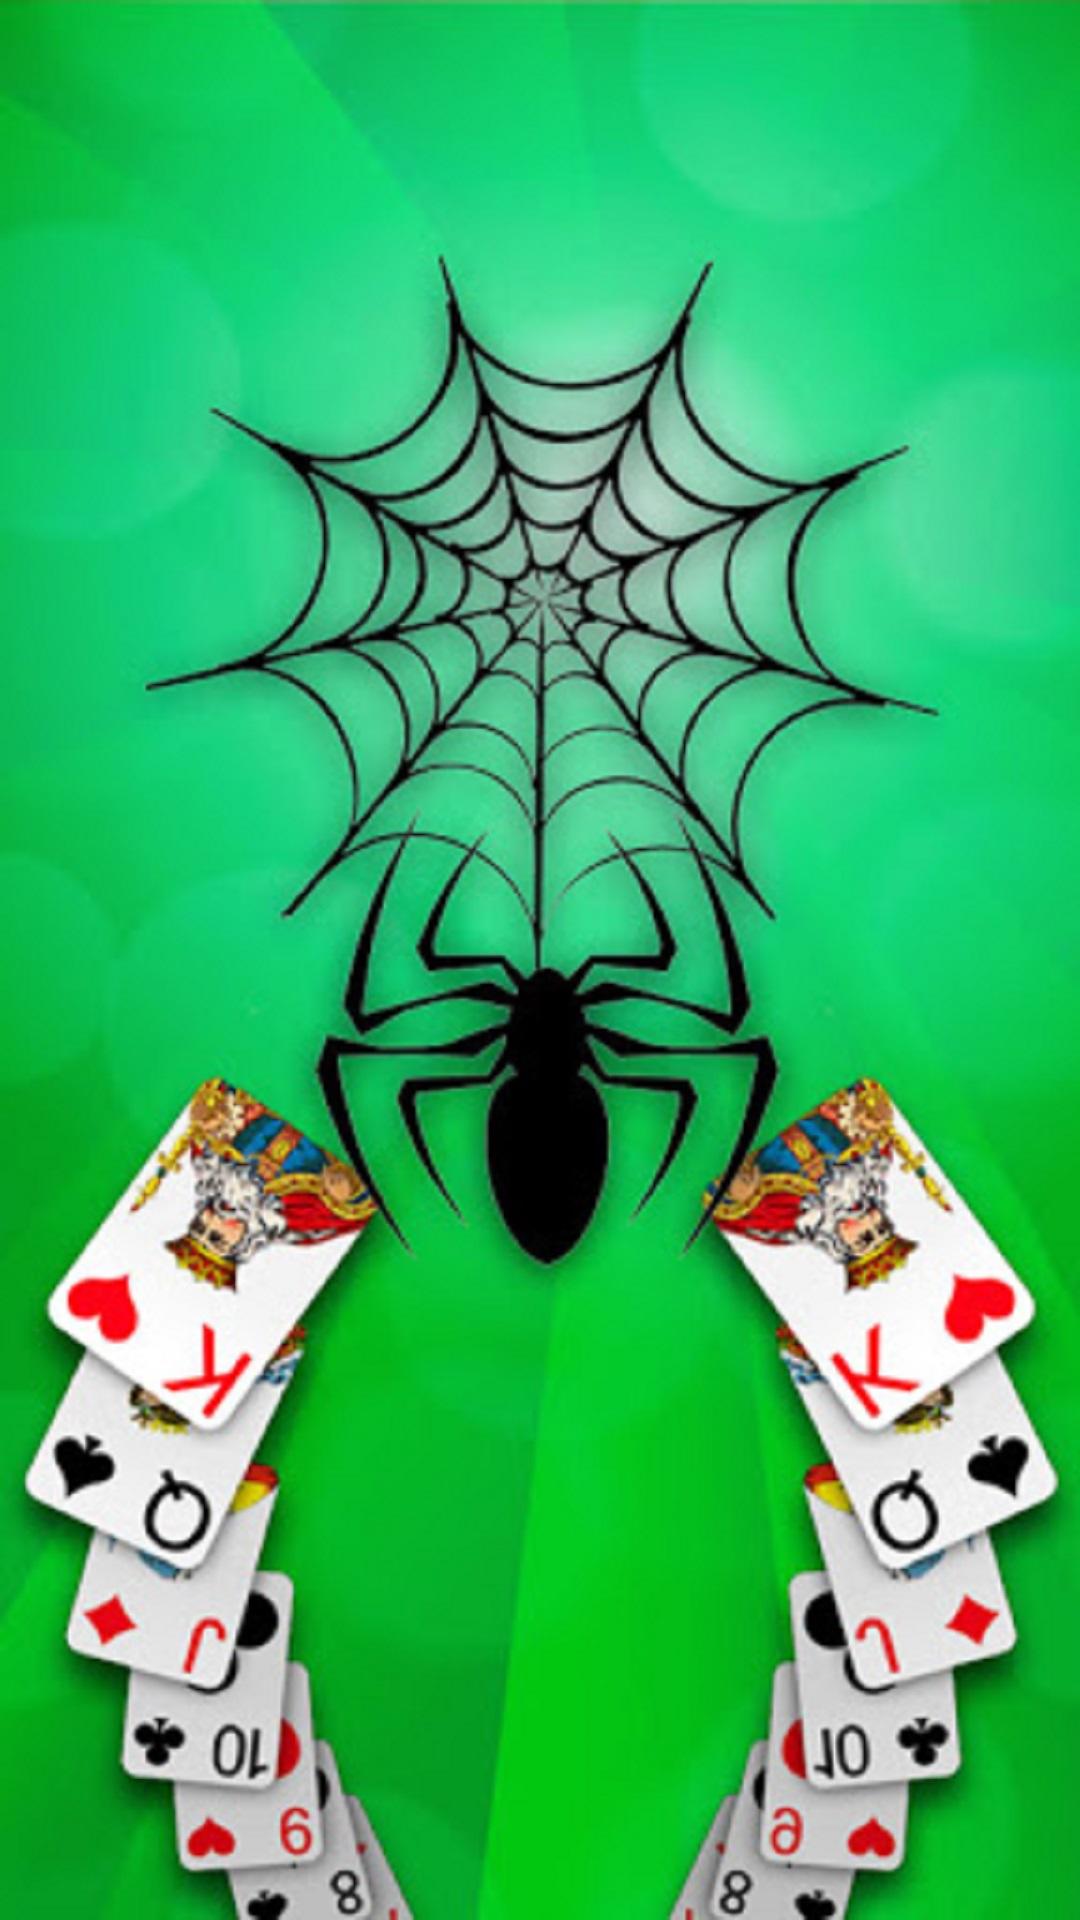 Paciência Spider Super Clássica versão móvel andróide iOS apk